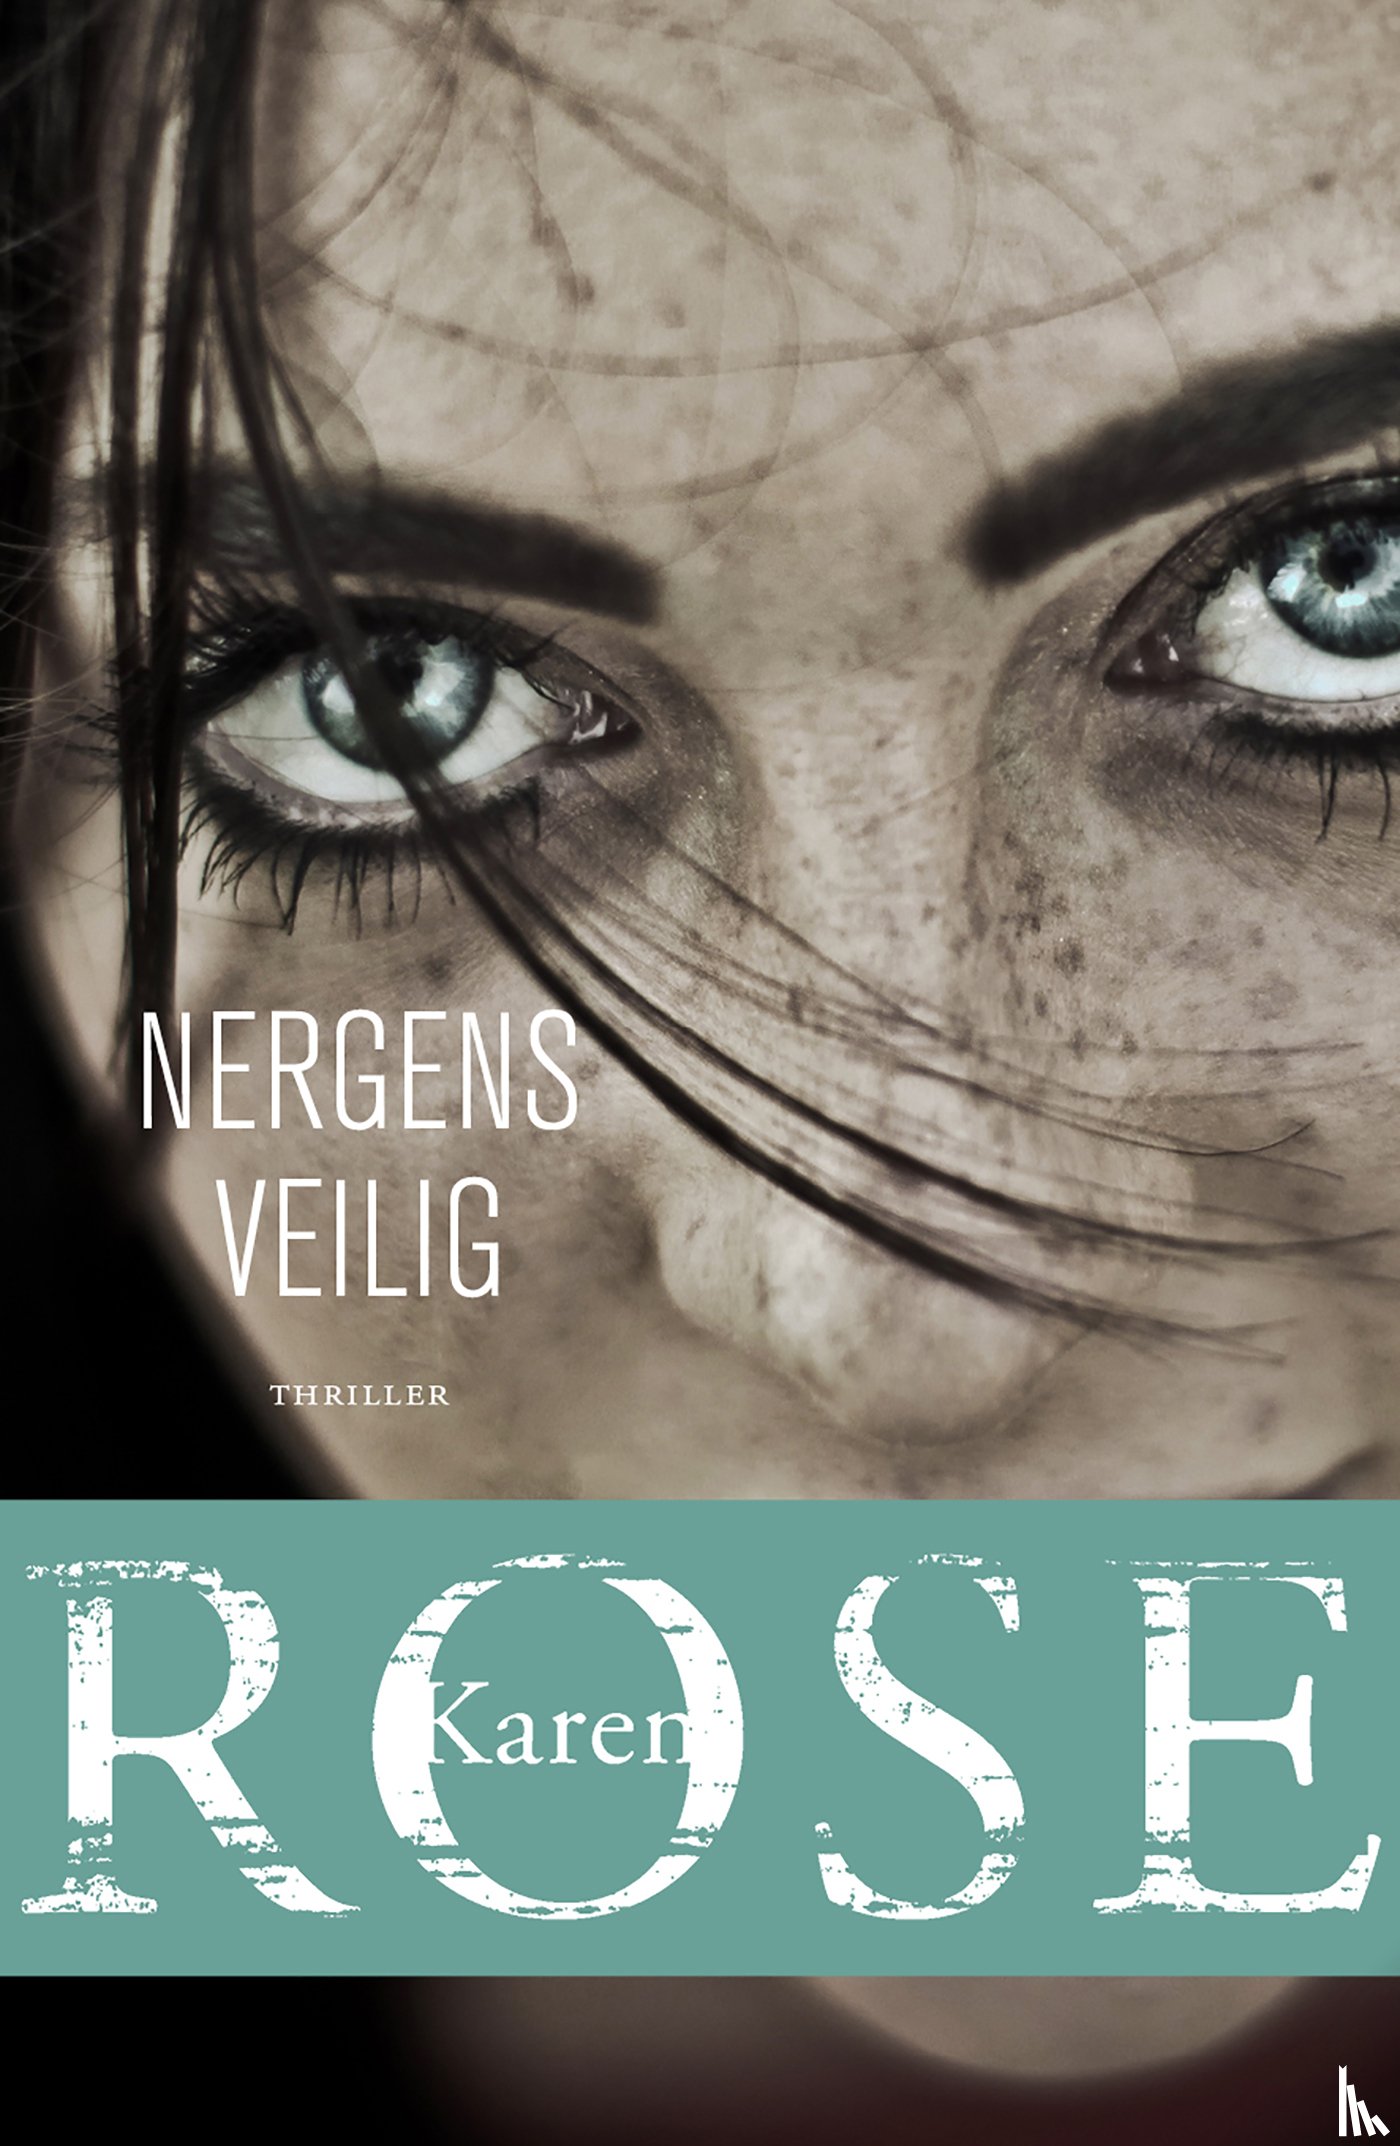 Rose, Karen - Nergens veilig